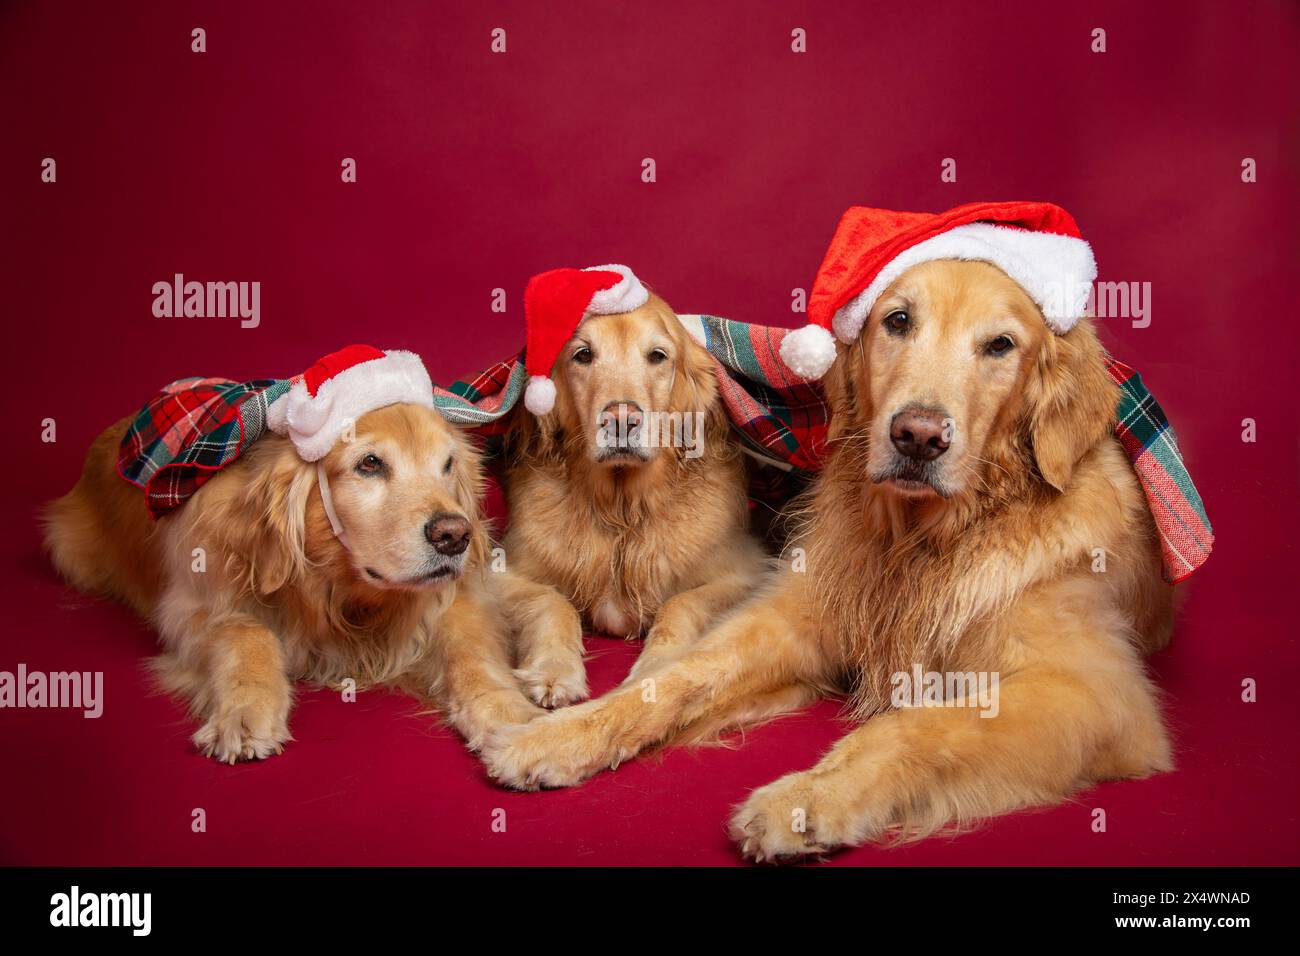 Trois Golden retrievers portant des chapeaux de Père Noël couchés sous une couverture Banque D'Images